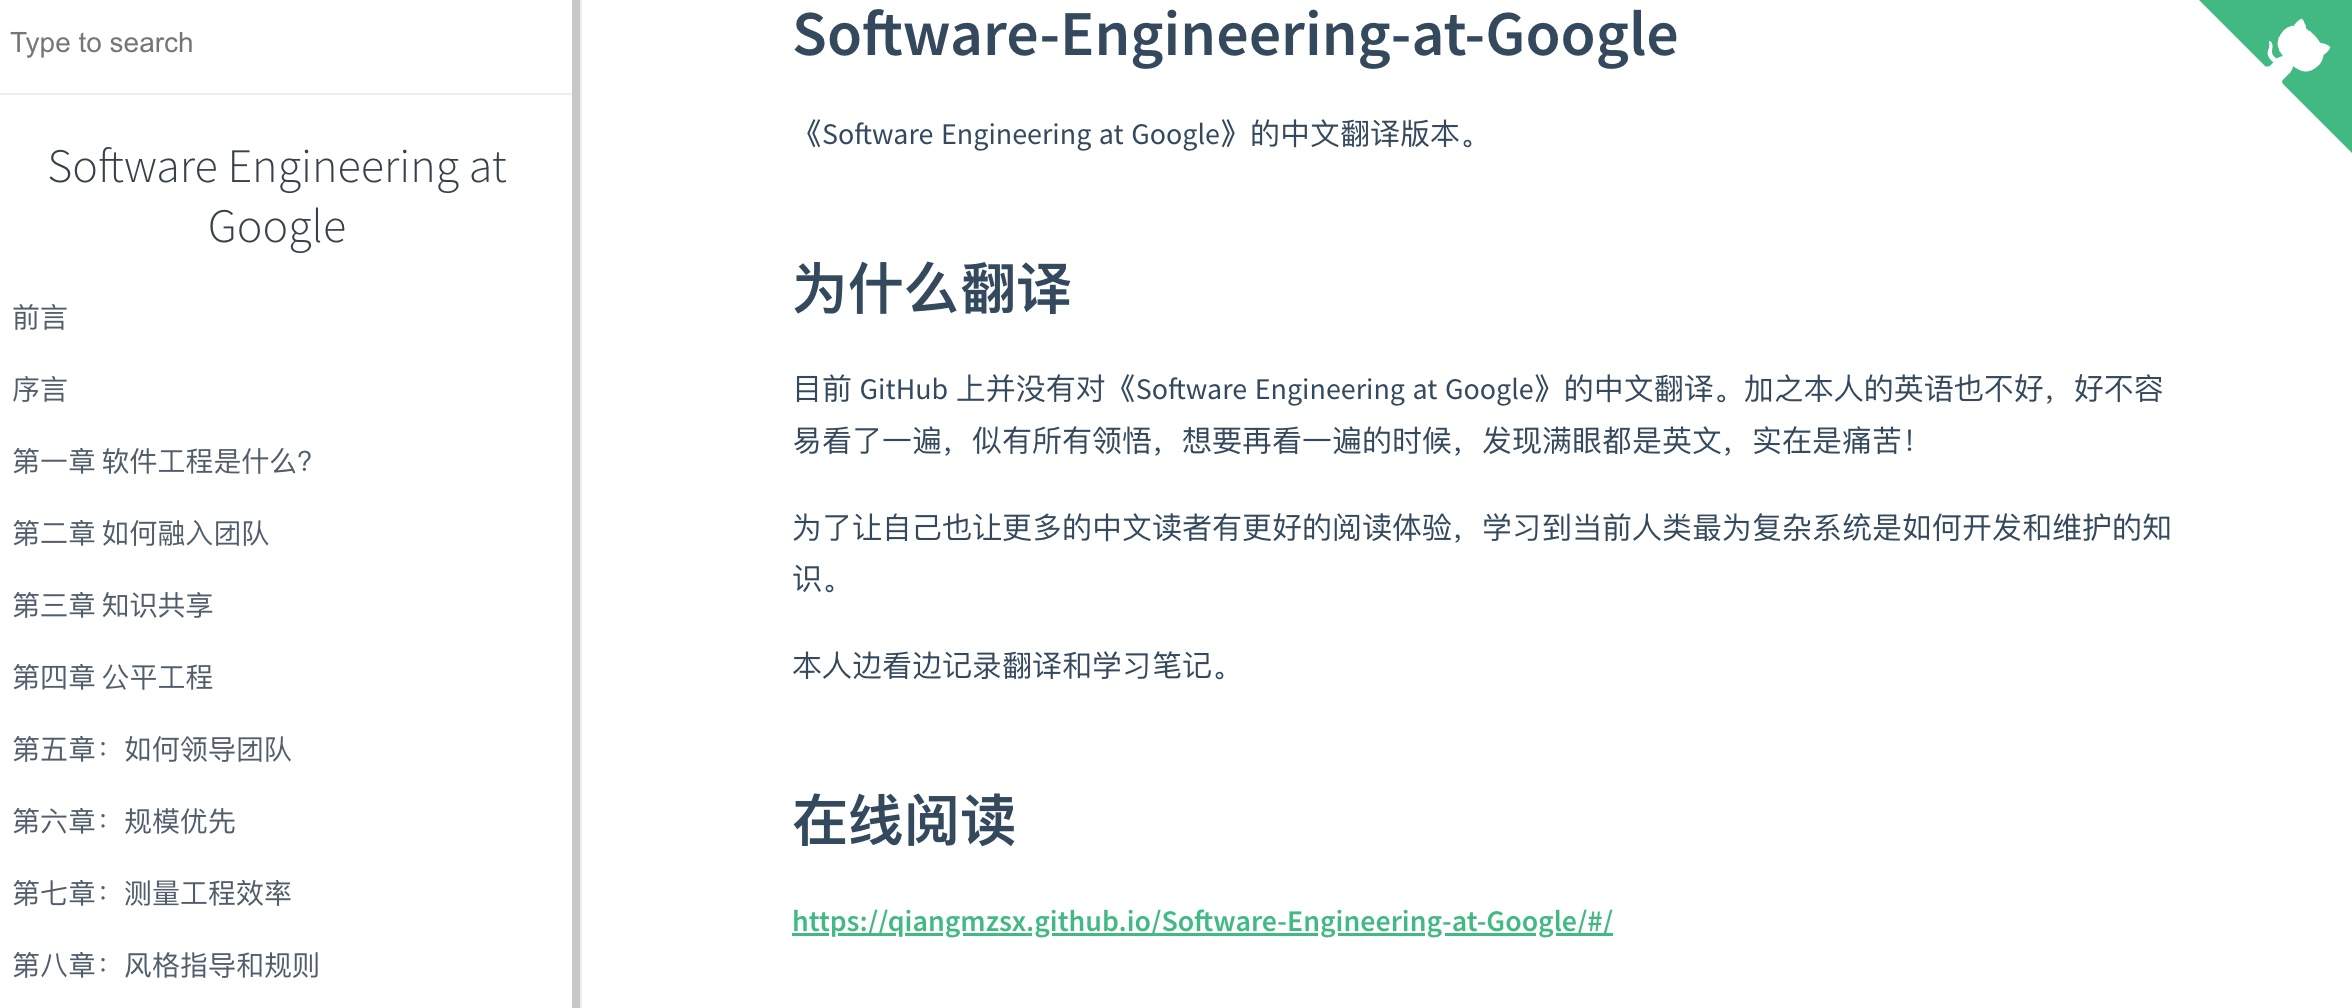 Software-Engineering-at-Google